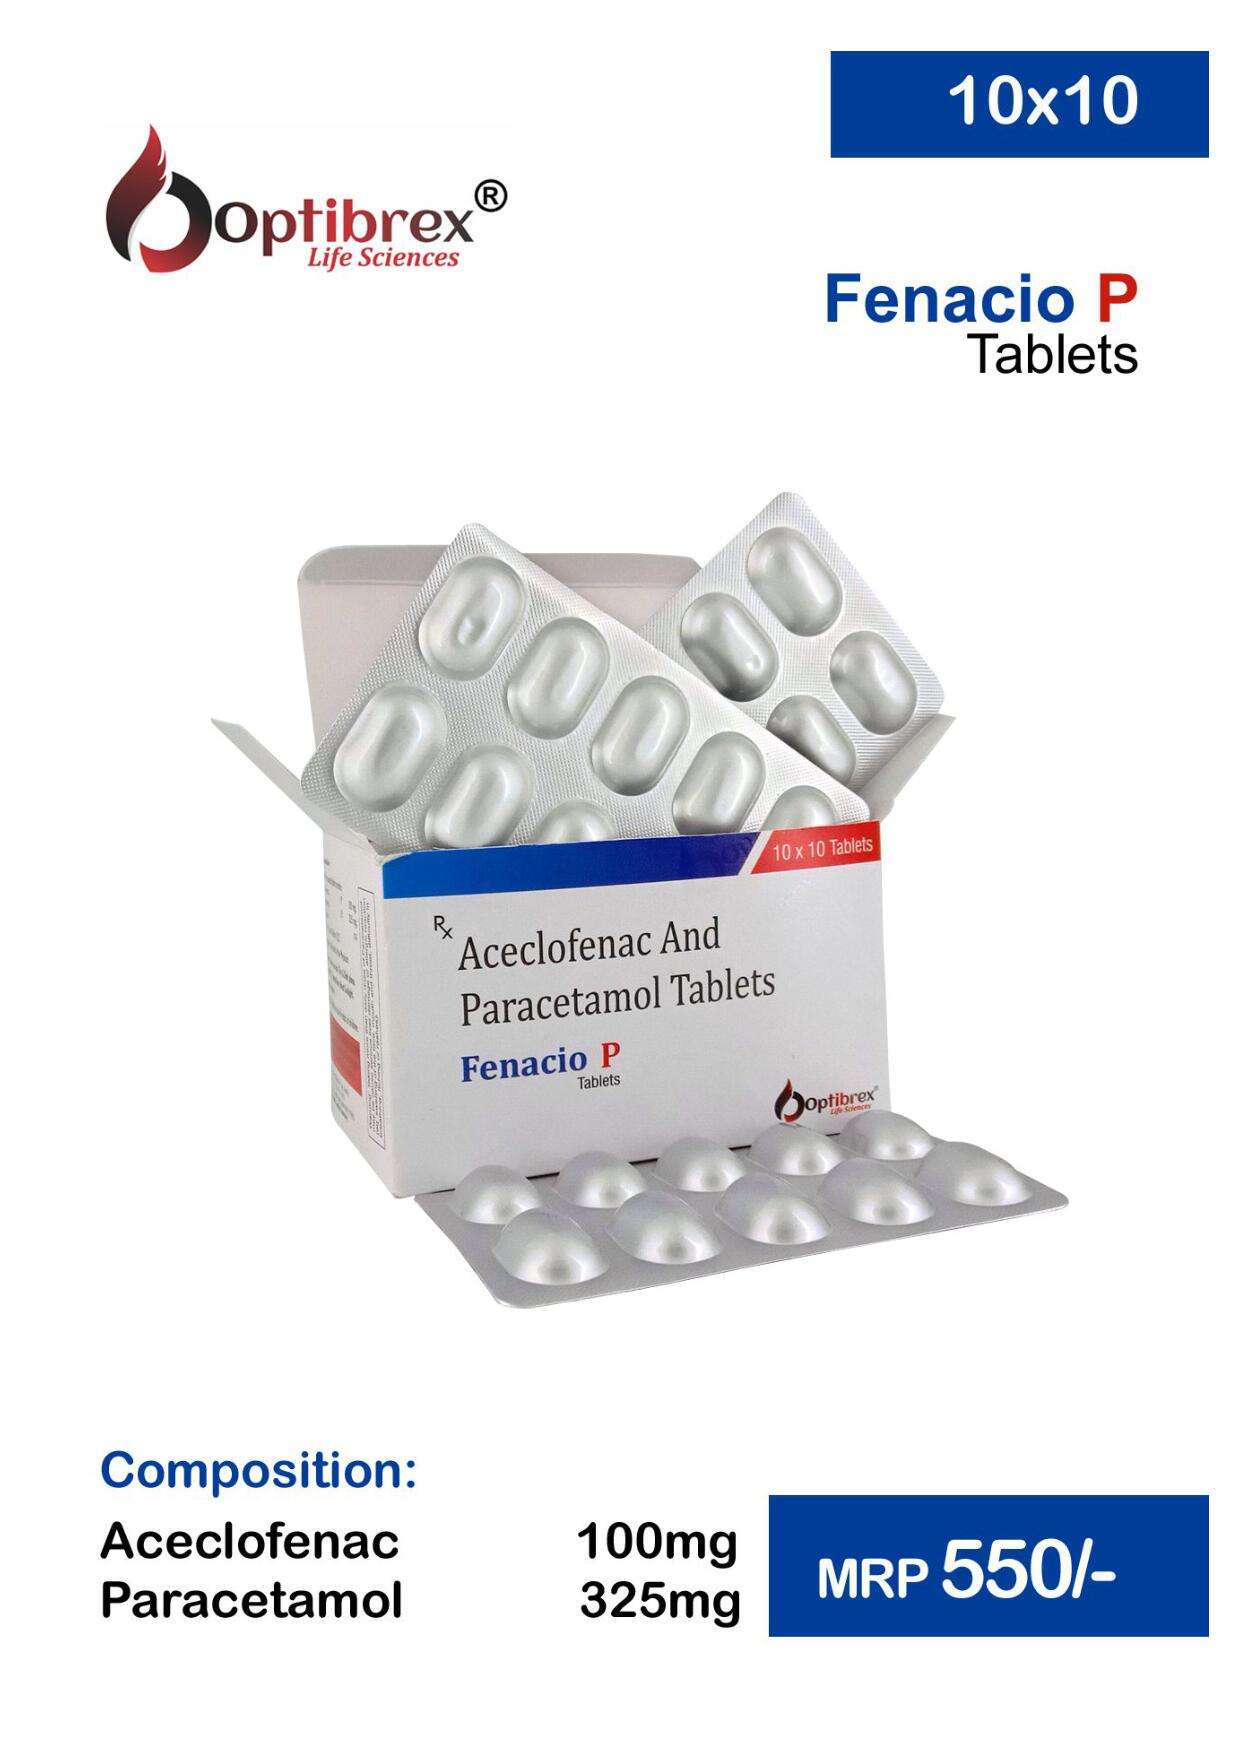 aceclofenac 100 mg+paracetamol
325 mg.